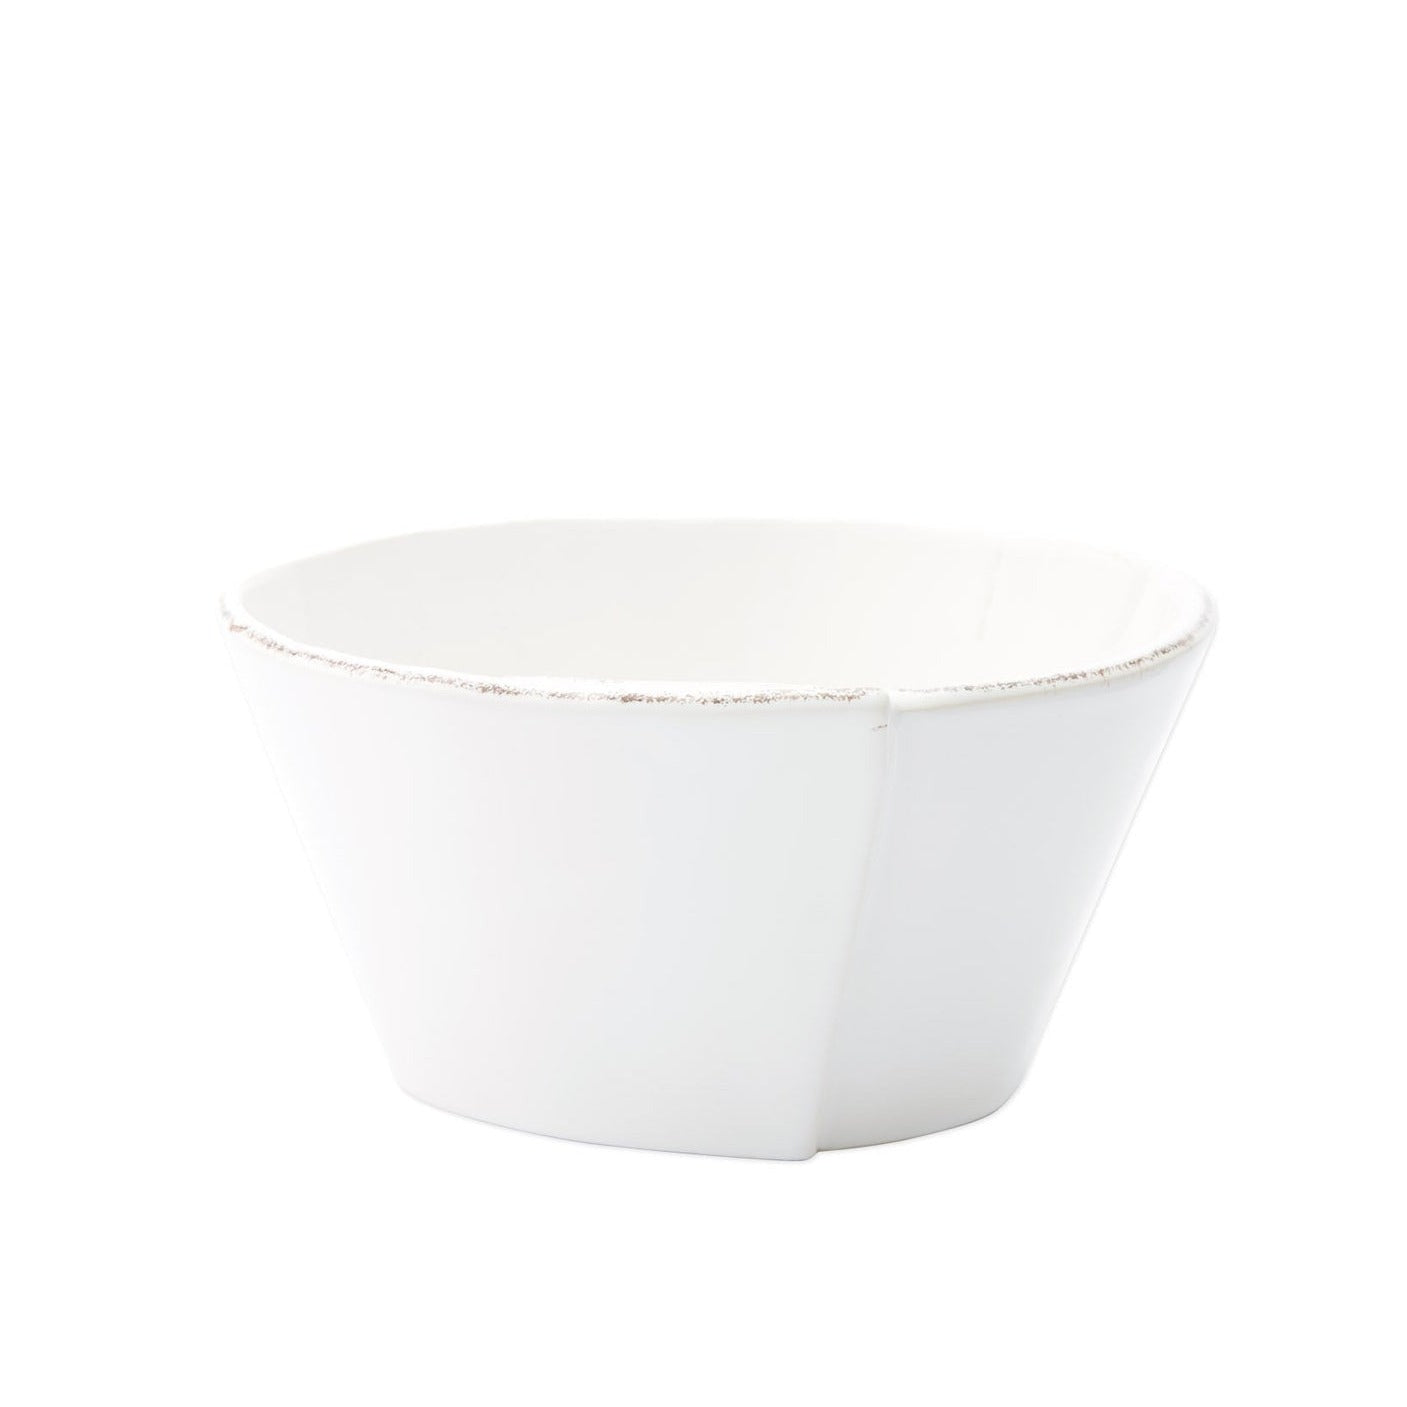 VIETRI: Lastra White Stacking Cereal Bowl - Artistica.com